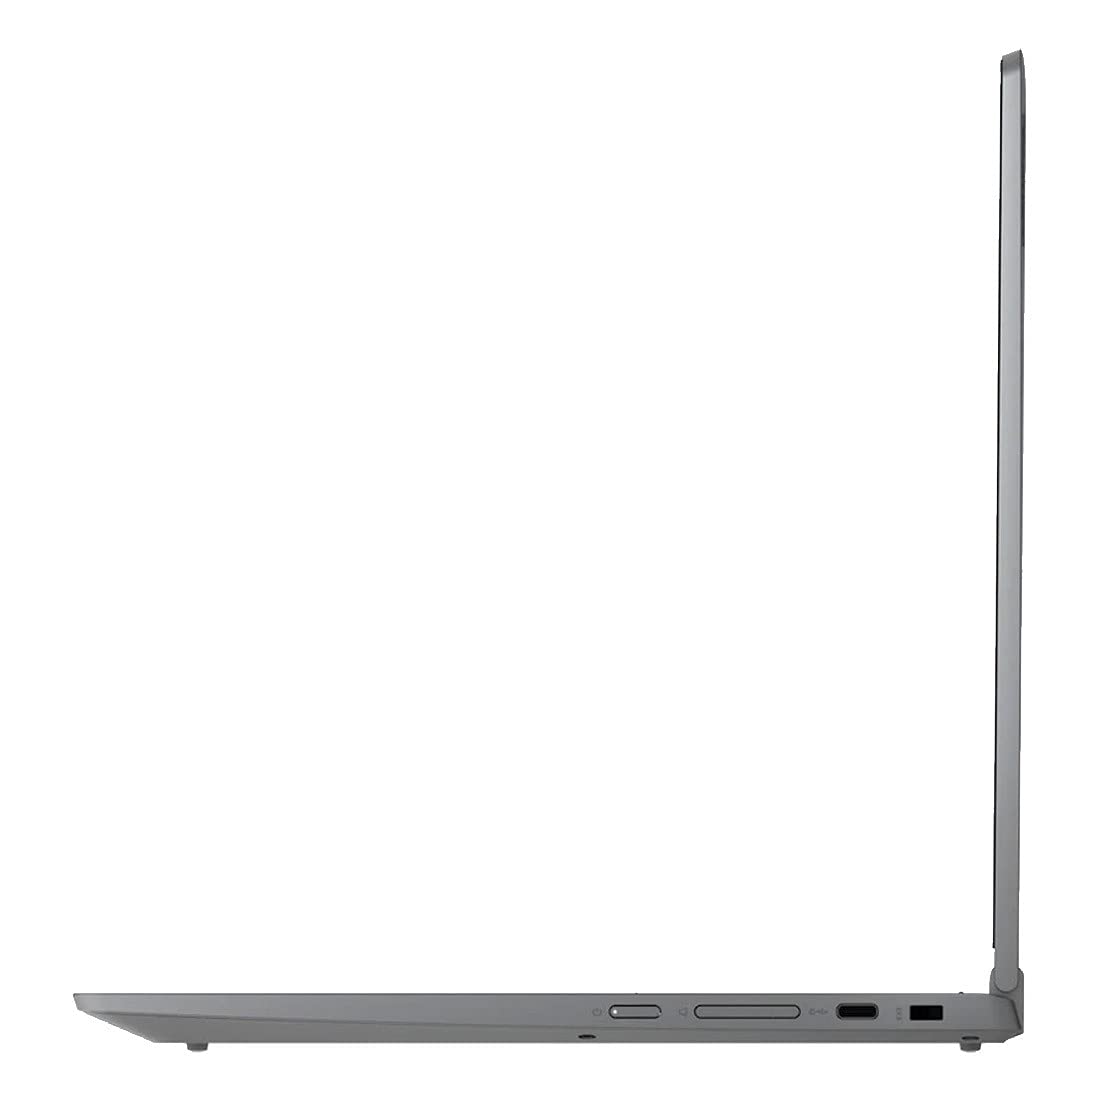 Lenovo Chromebook Flex 5 13